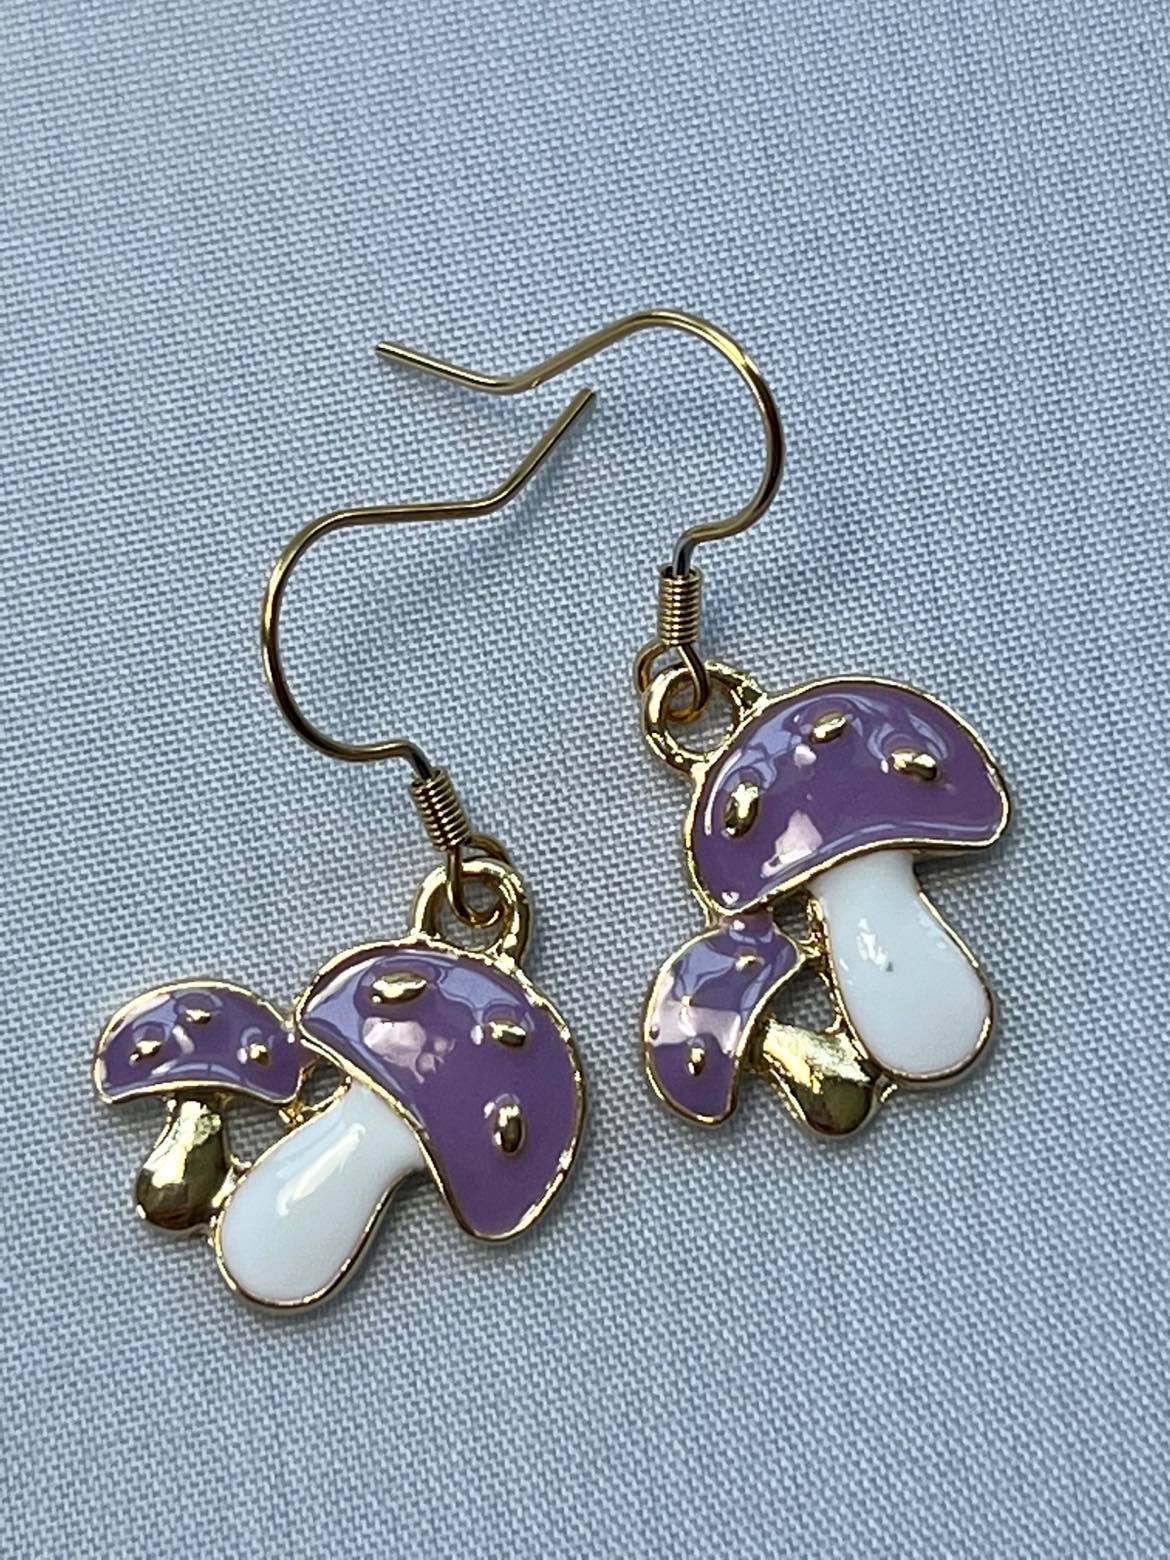 Purple Mushroom / Shroom Dangle Earrings